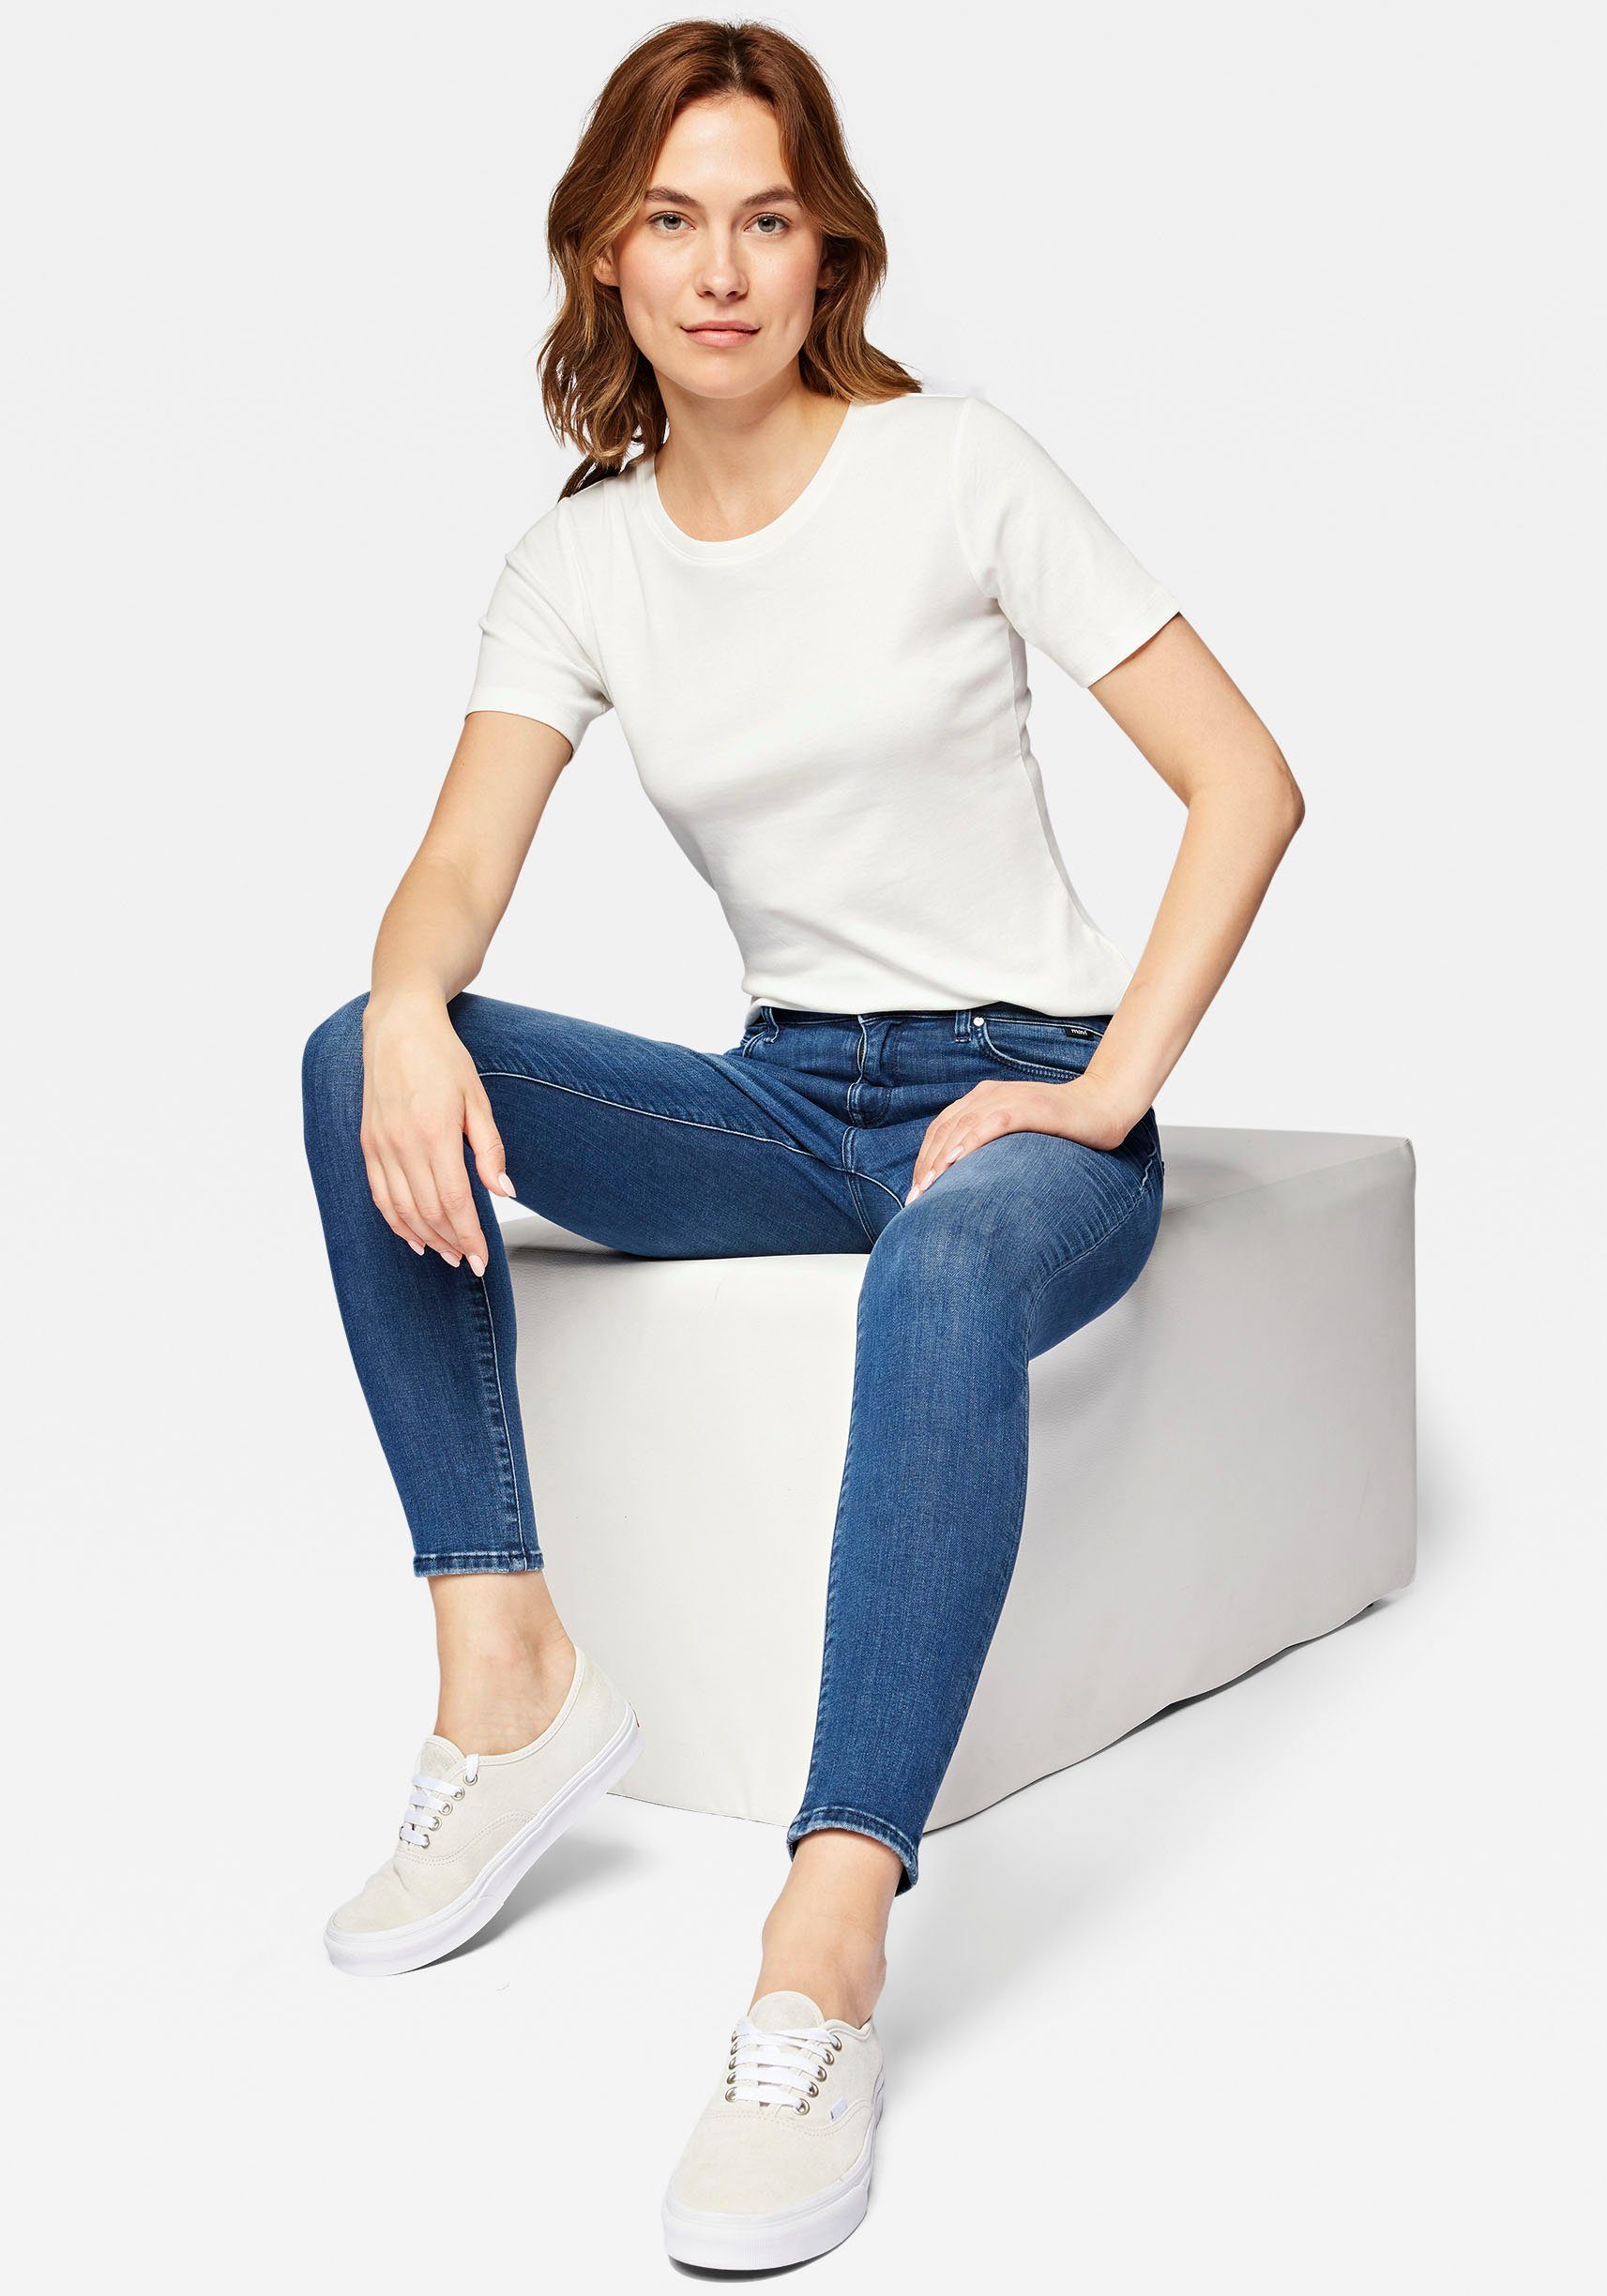 Skinny-fit-Jeans den ADRIANA Mavi mit blue perfekten Stretch dark brushed Sitz für